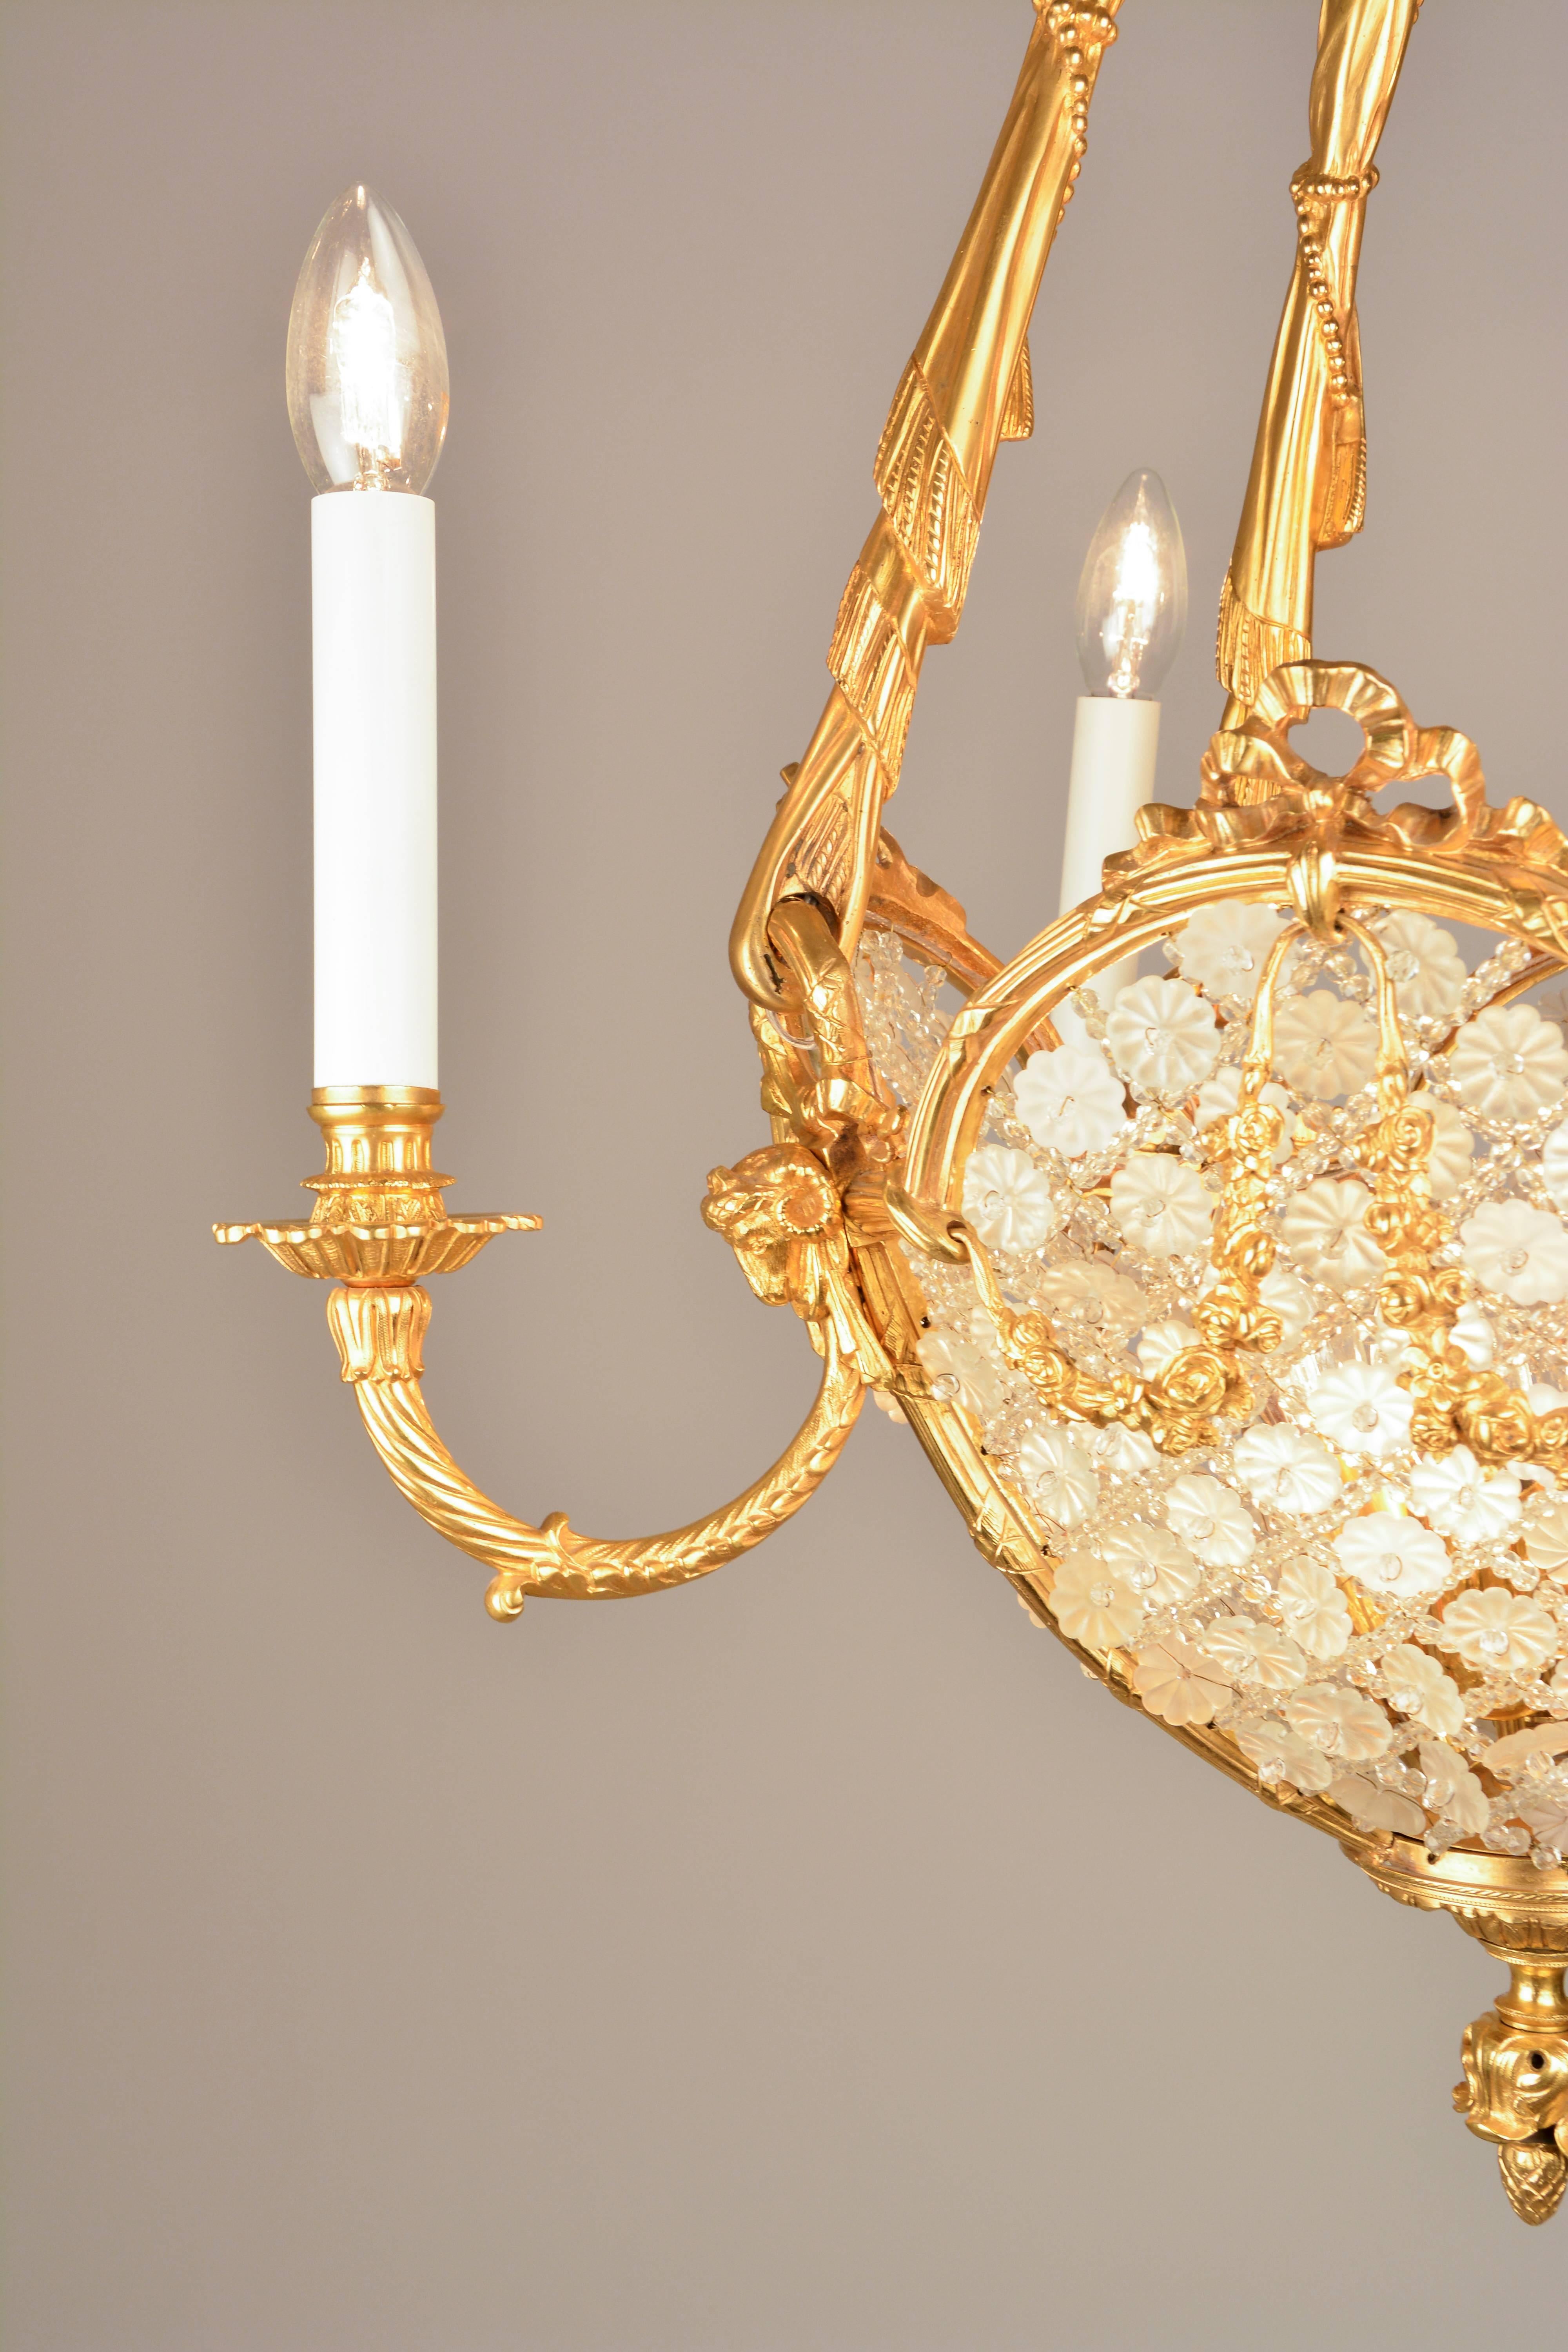 19th Century Romantic Fin De Siecle Pendant Lamp For Sale